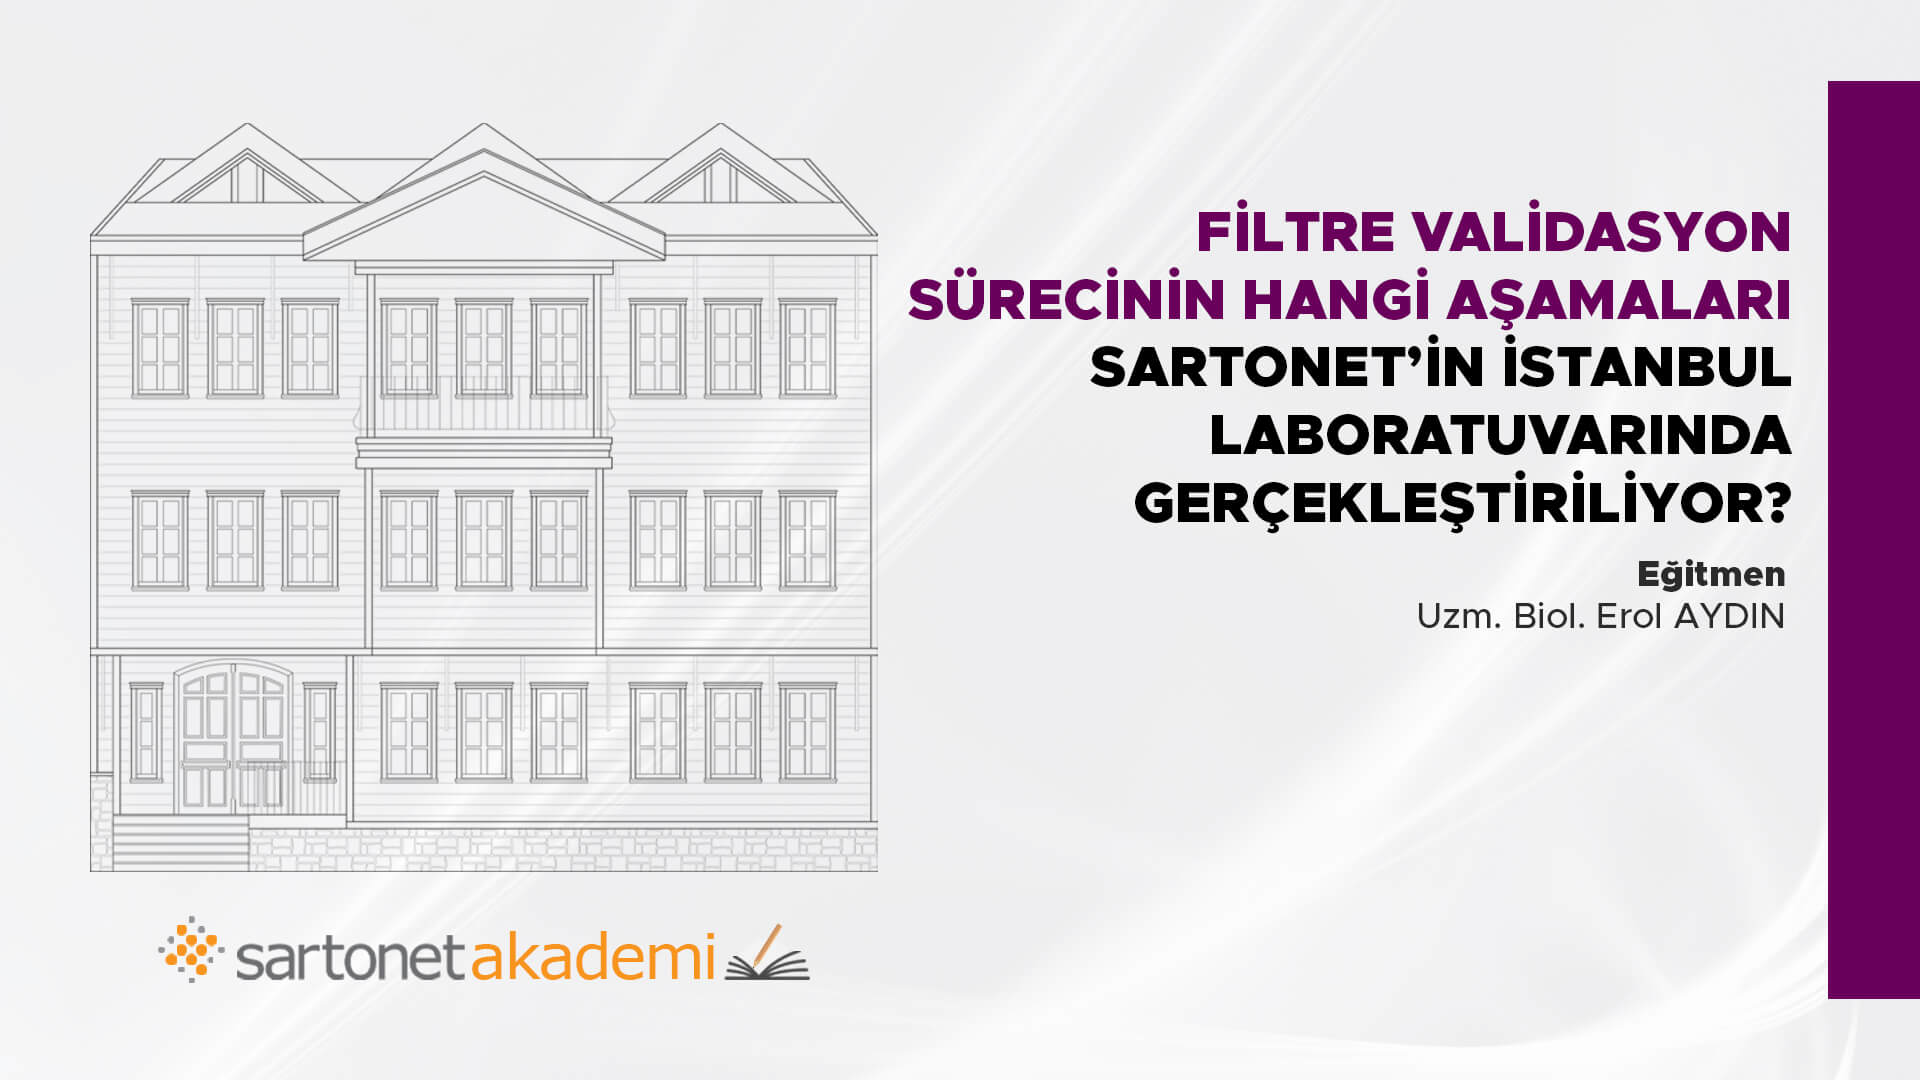 Filtre validasyon sürecinin hangi aşamaları  Sartorius İstanbul laboratuvarında gerçekleştiriliyor?